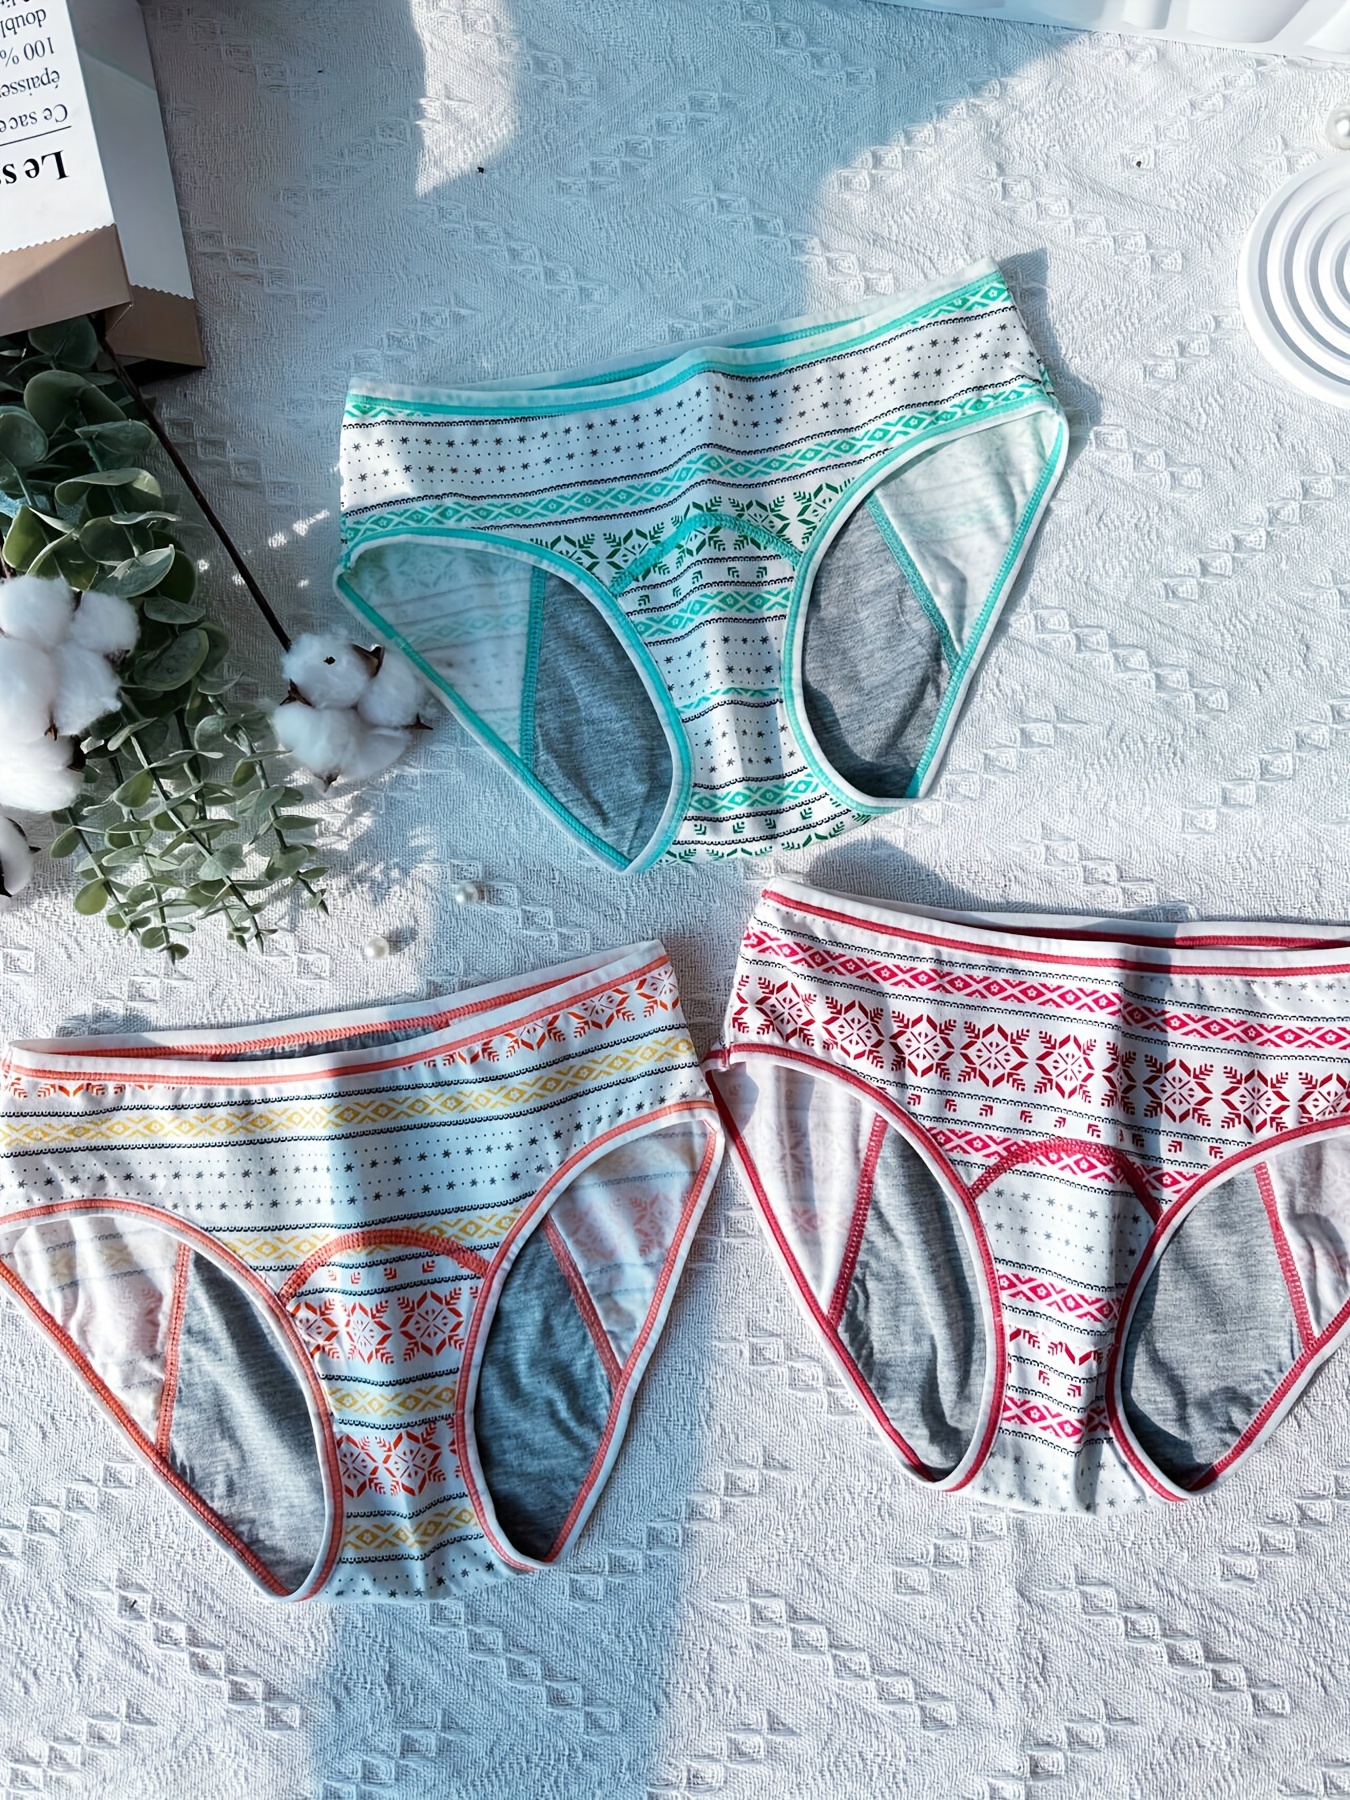 Period Panties Protective Menstrual Underwear Leak-Proof Easy